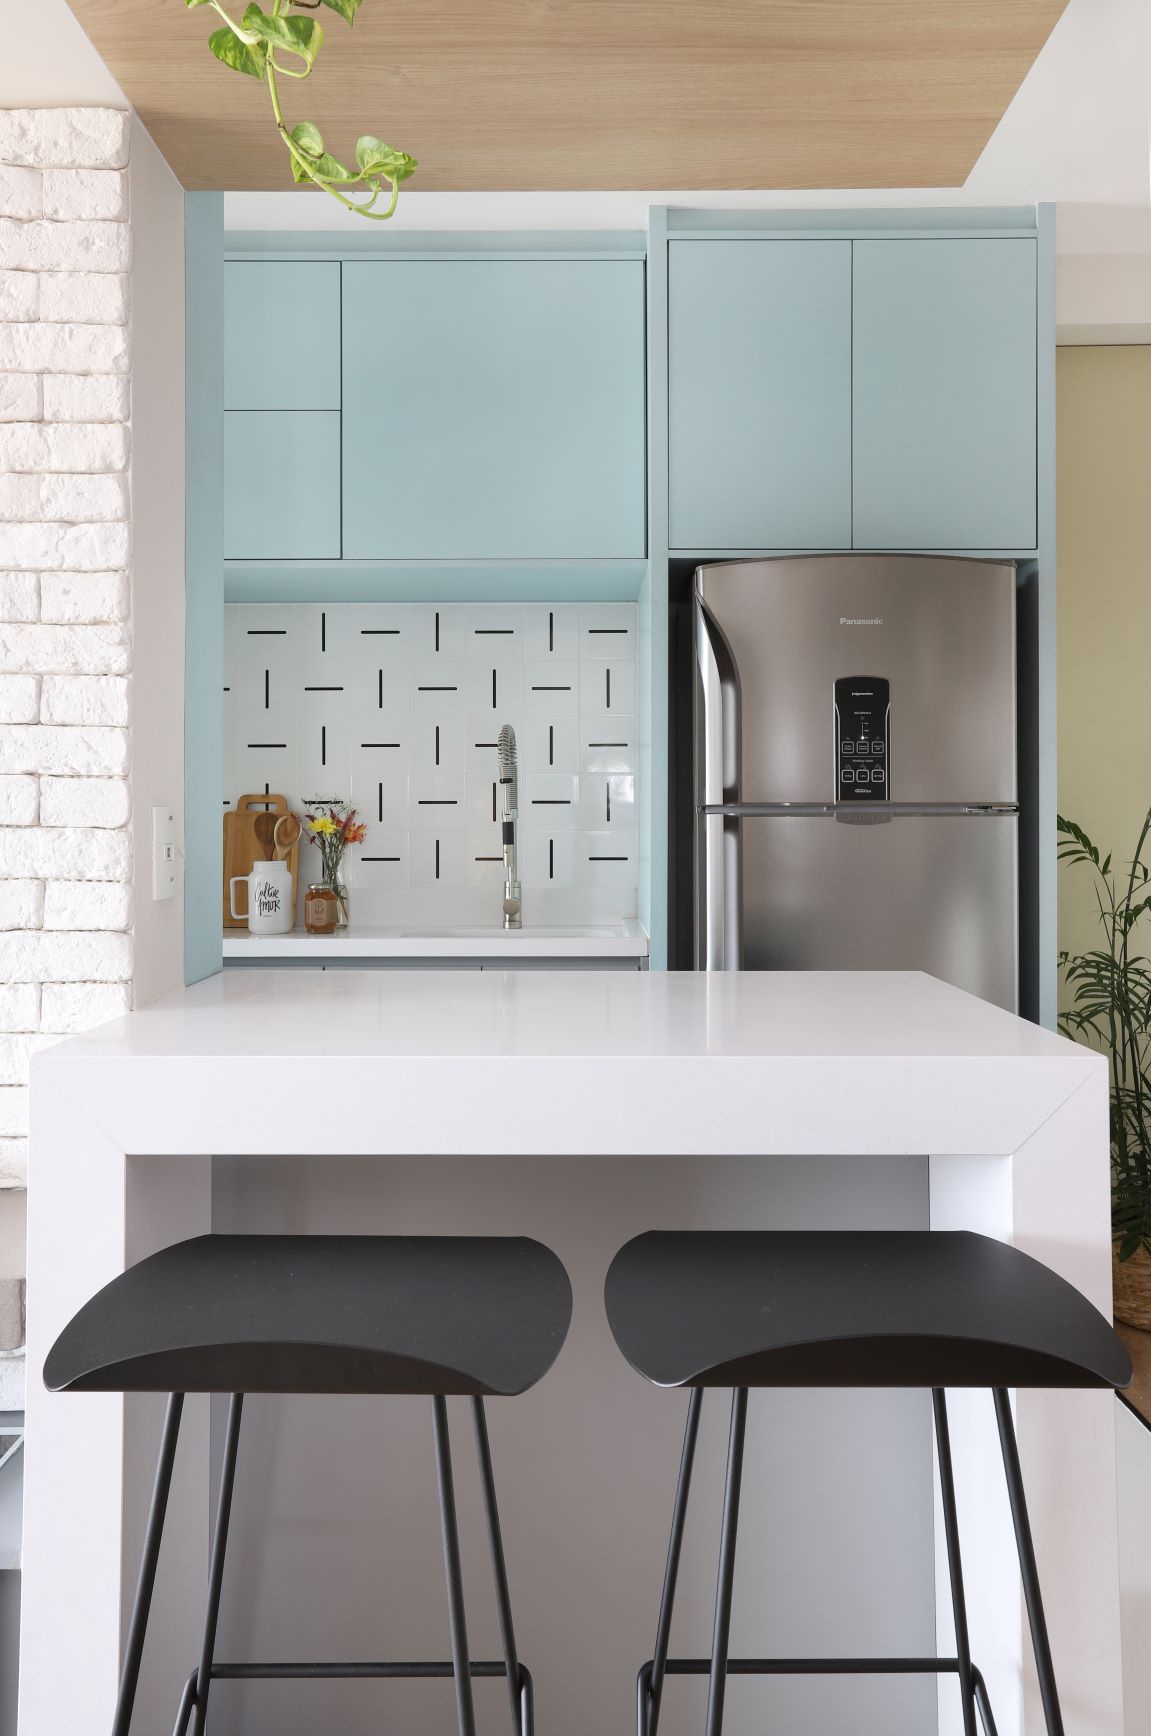 Apartamento com cores definidas a partir da escala Pantone. Cozinha com marcenaria em tom azul pastel e balcão branco. 